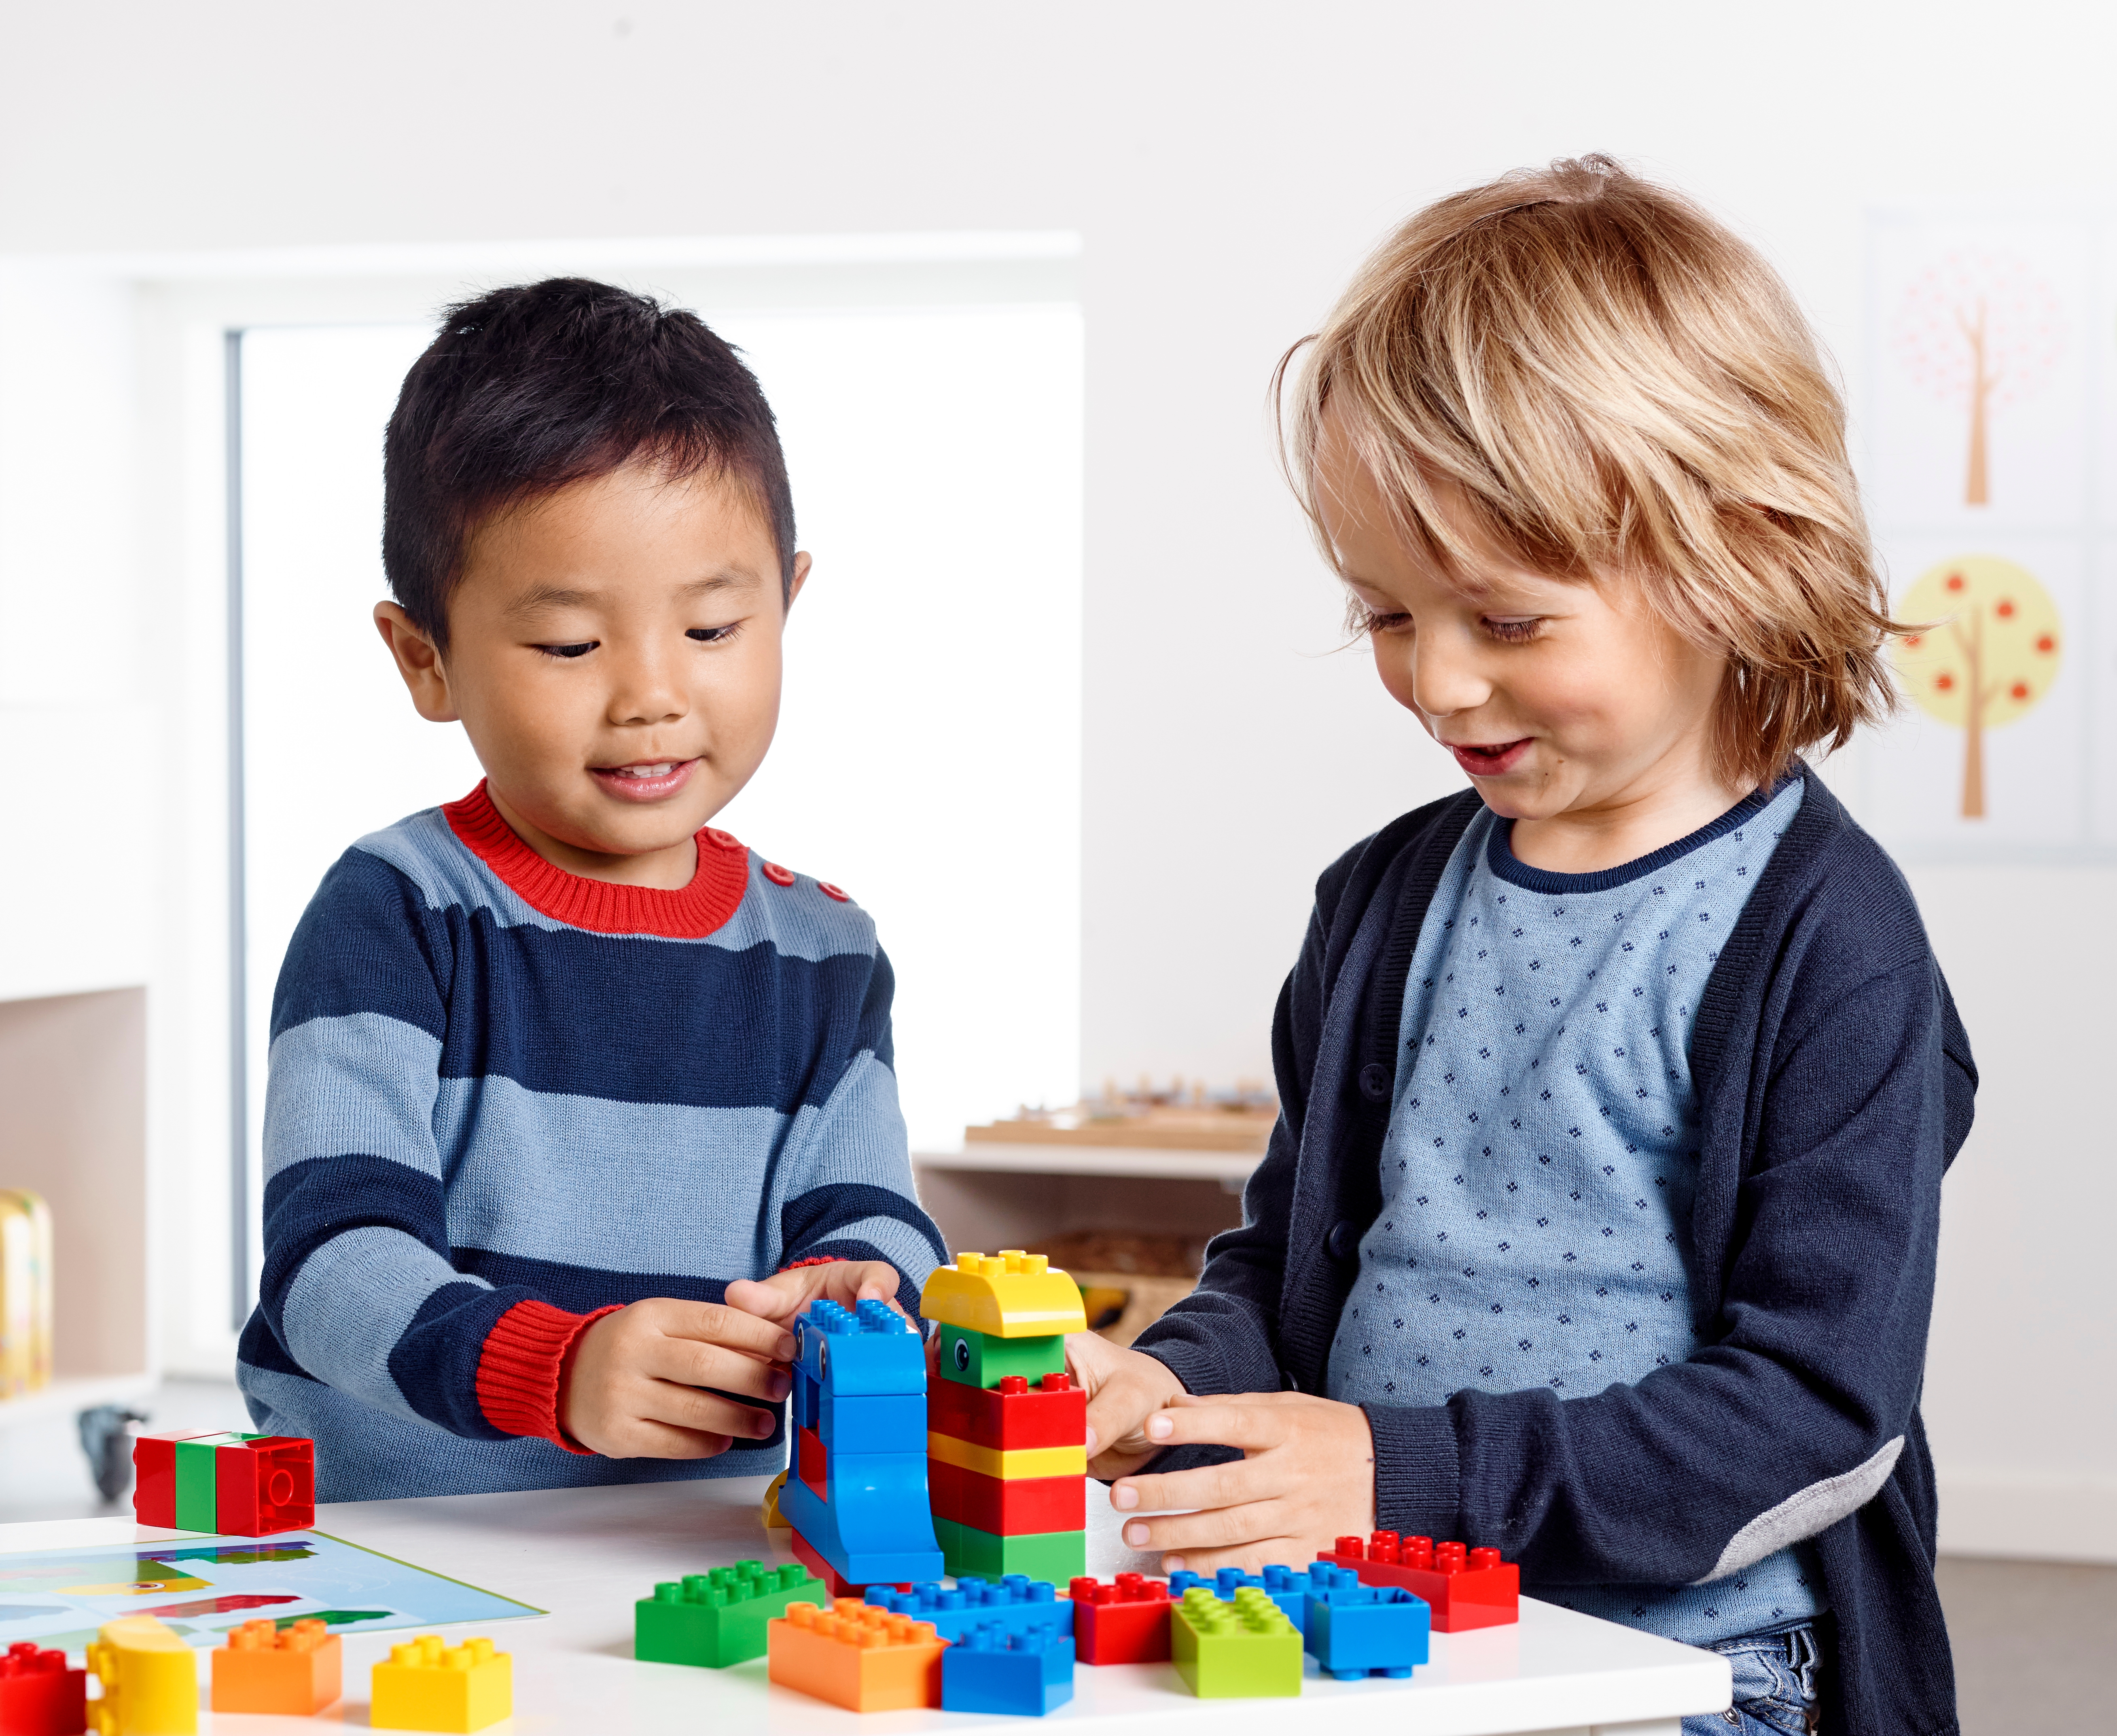 Ensemble de briques Créatives LEGO® DUPLO® LEGO EDUCATION